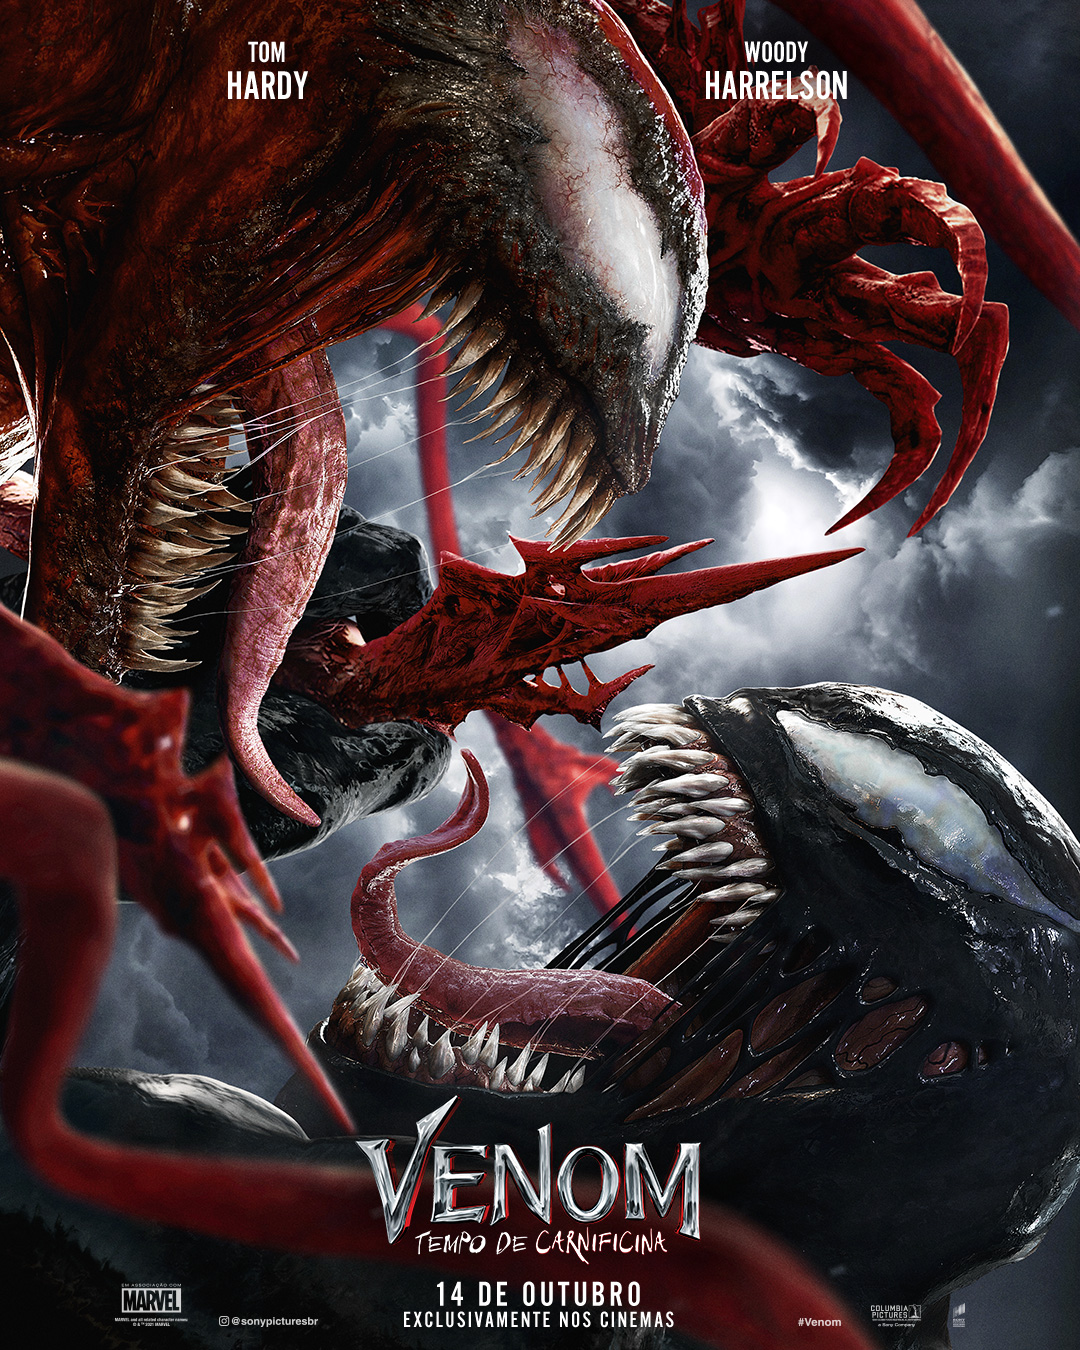 Sony Pictures Brasil ٹوئٹر پر: "#Venom vs. #Carnificina. O grande encontro  começa em 14 de outubro, exclusivamente nos cinemas. #Venom: Tempo de  Carnificina… https://t.co/yiFNOJUbYn"